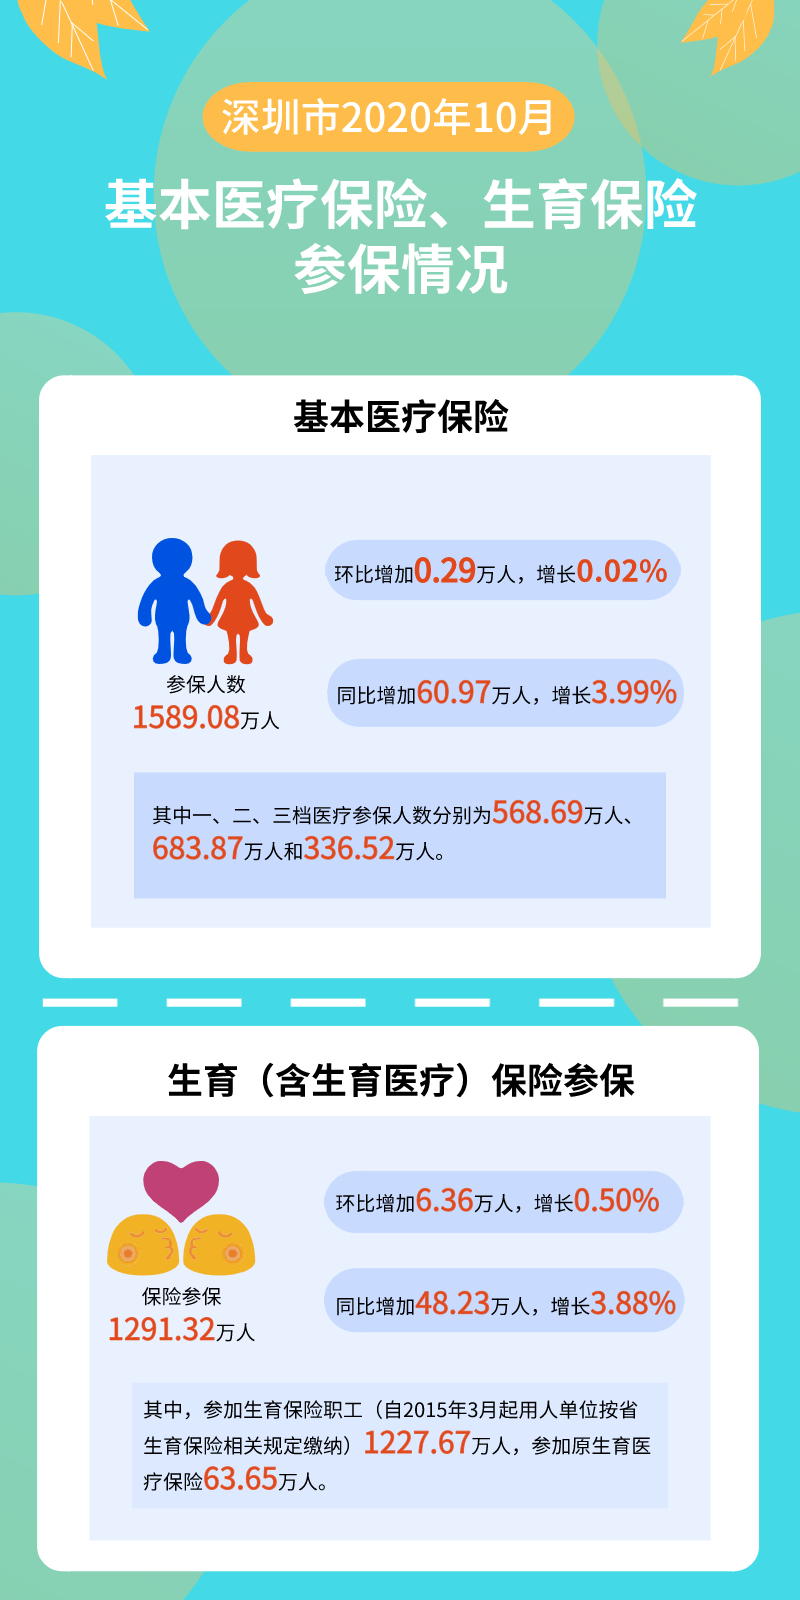 深圳市2020年10月基本医疗保险、生育保险参保情况概述.jpg